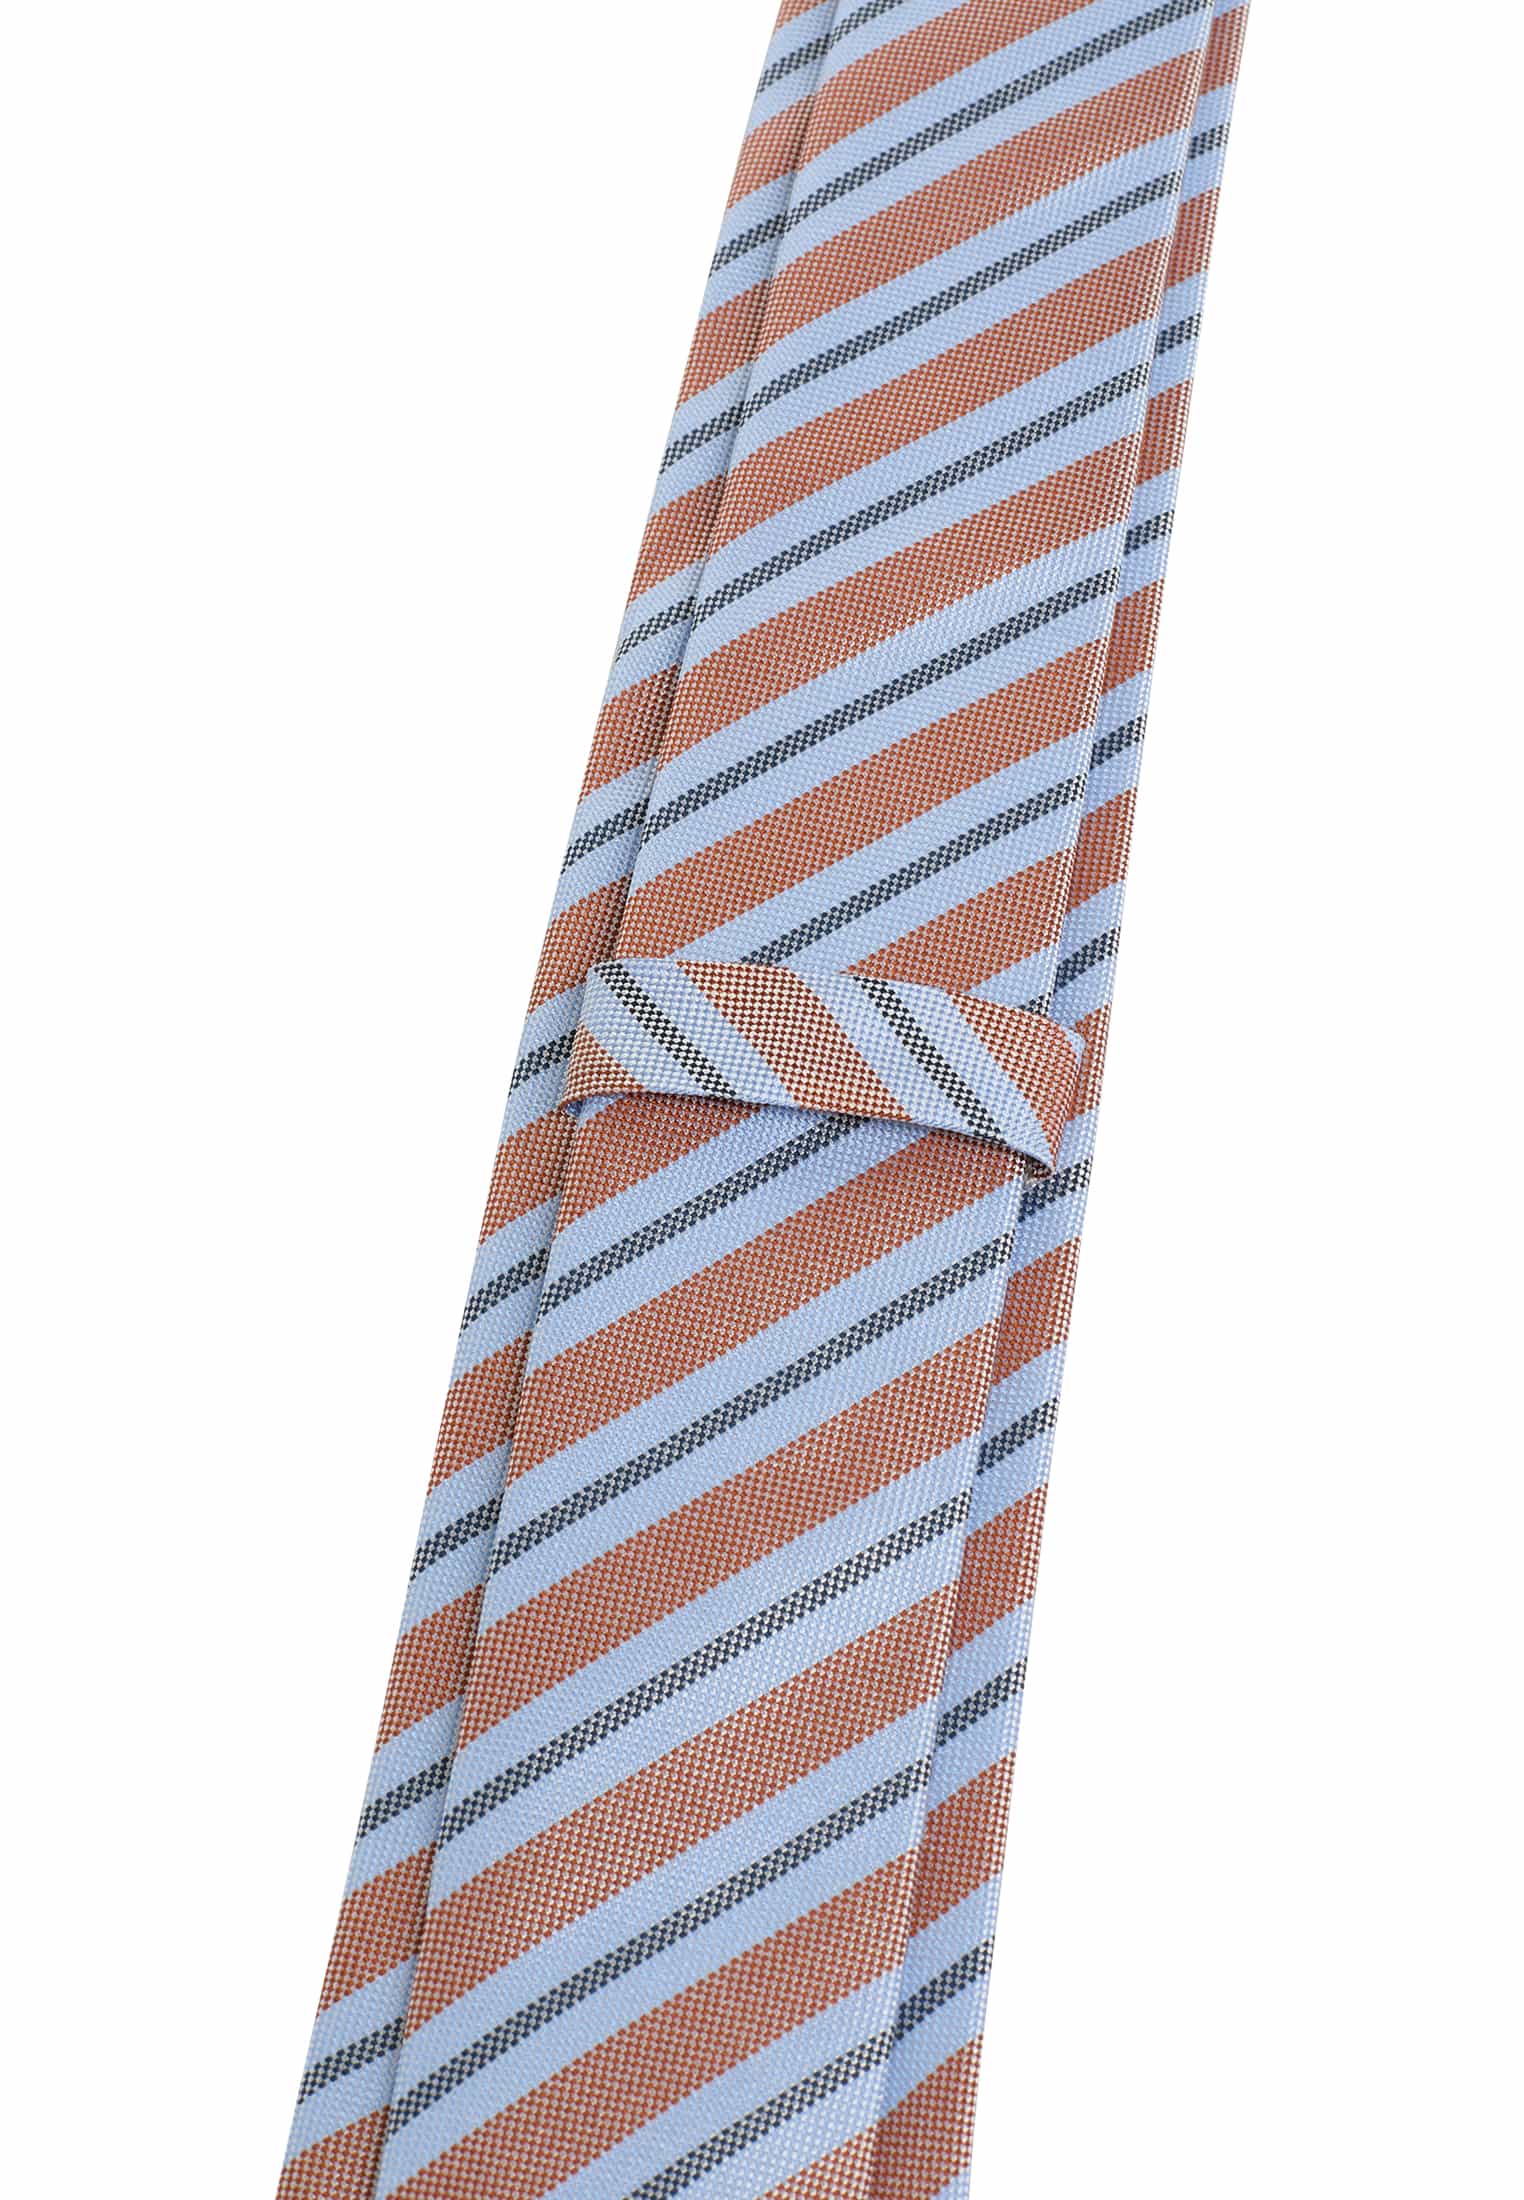 Krawatte in hellblau/orange gestreift | | hellblau/orange 1AC02000-81-33-142 | 142